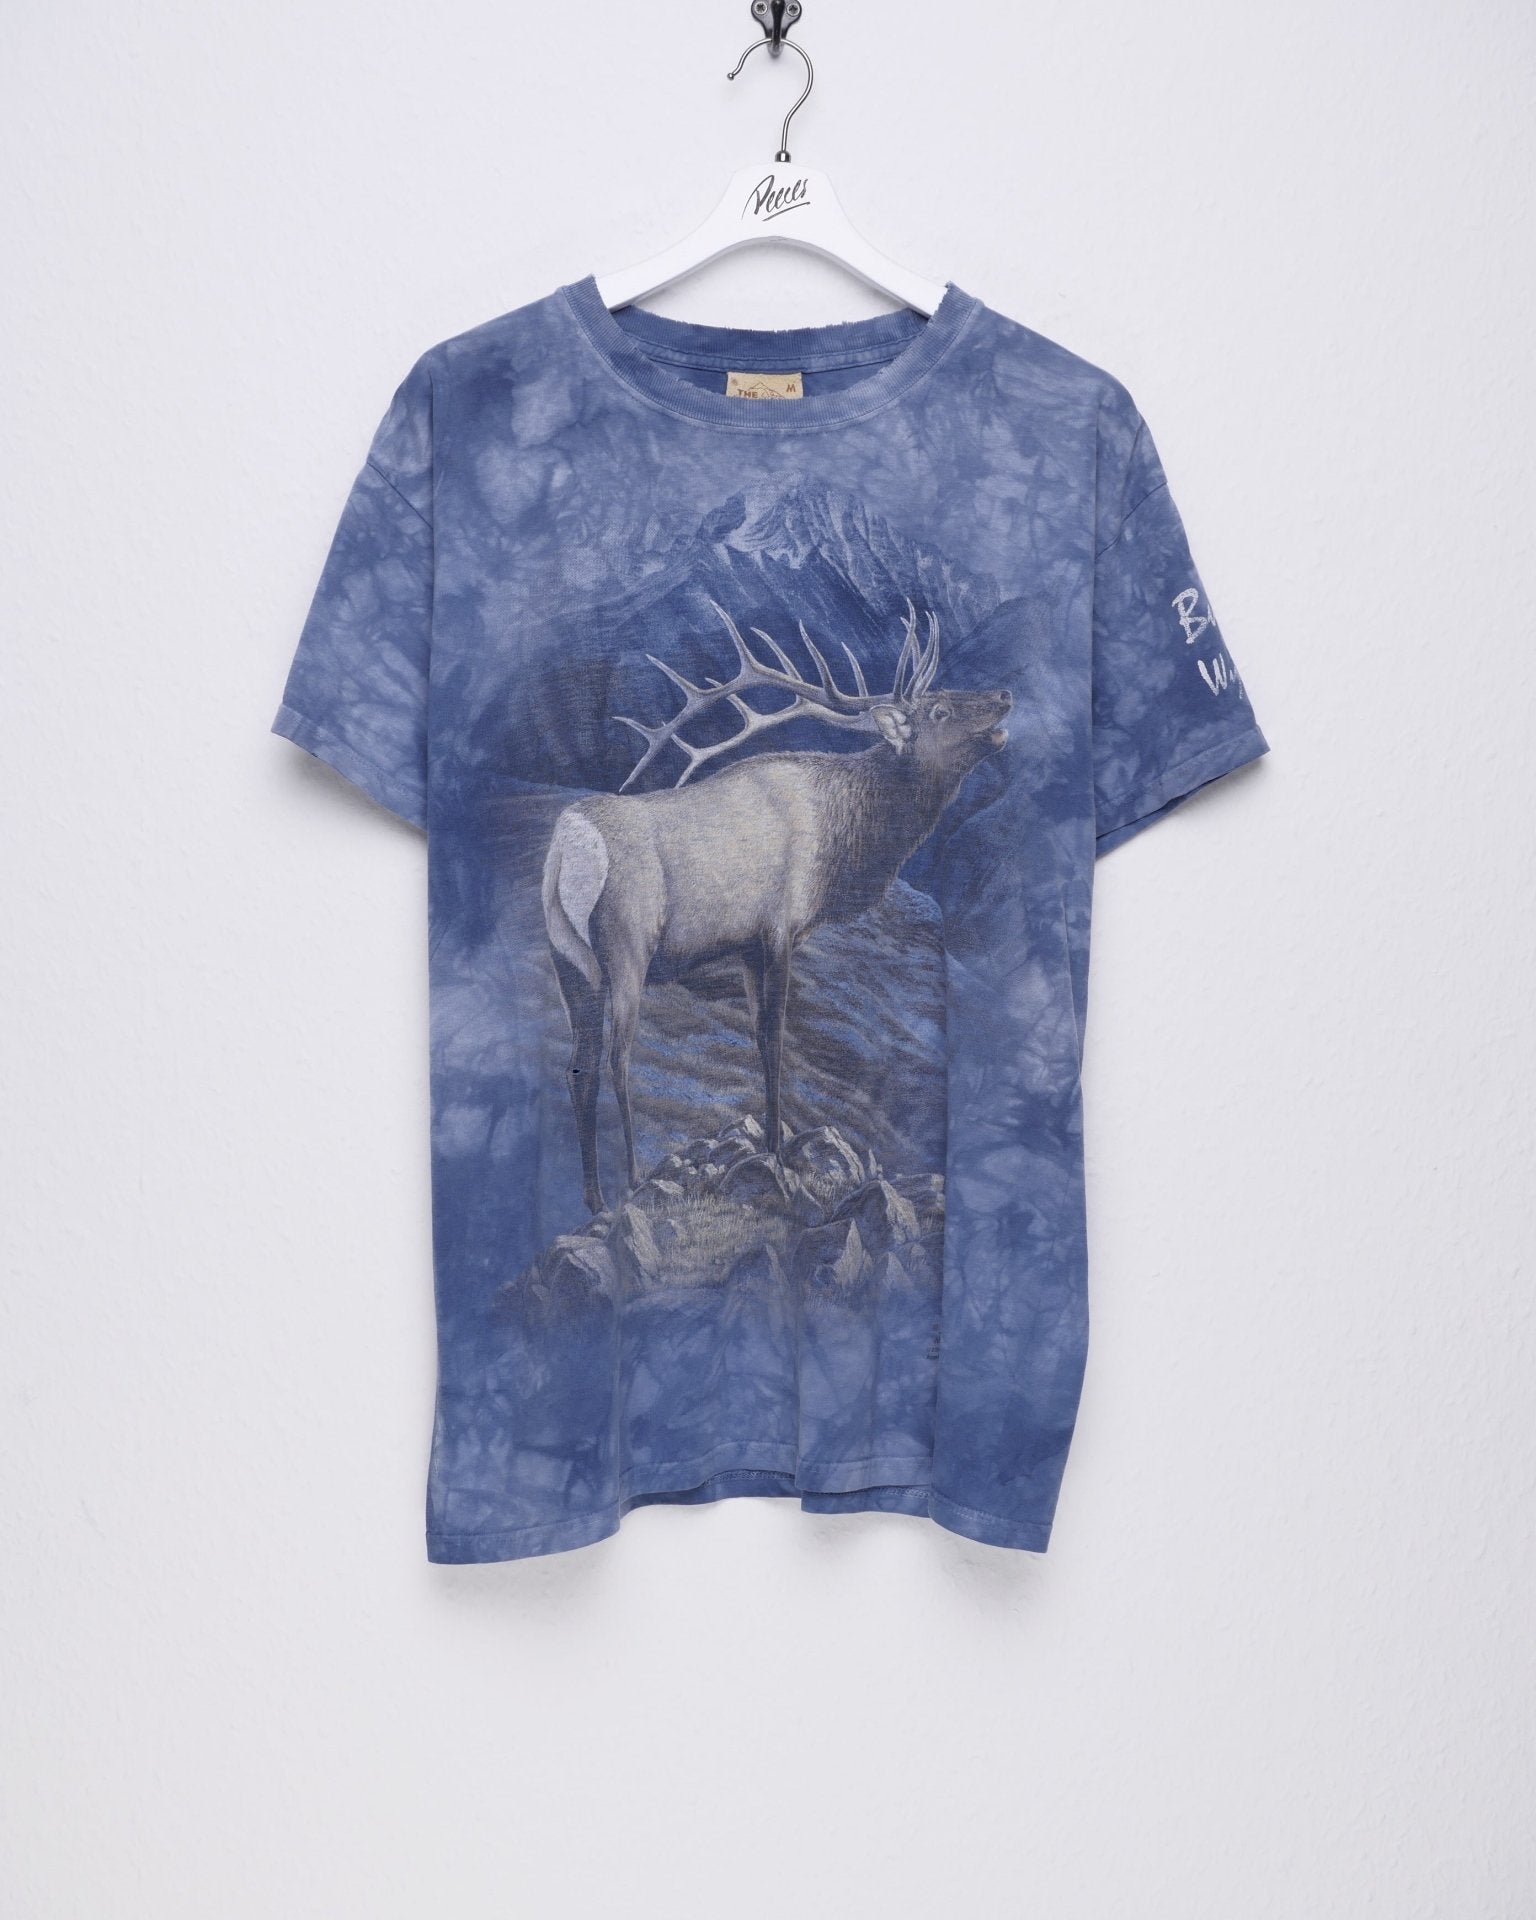 Deer printed Graphic Vintage Shirt - Peeces